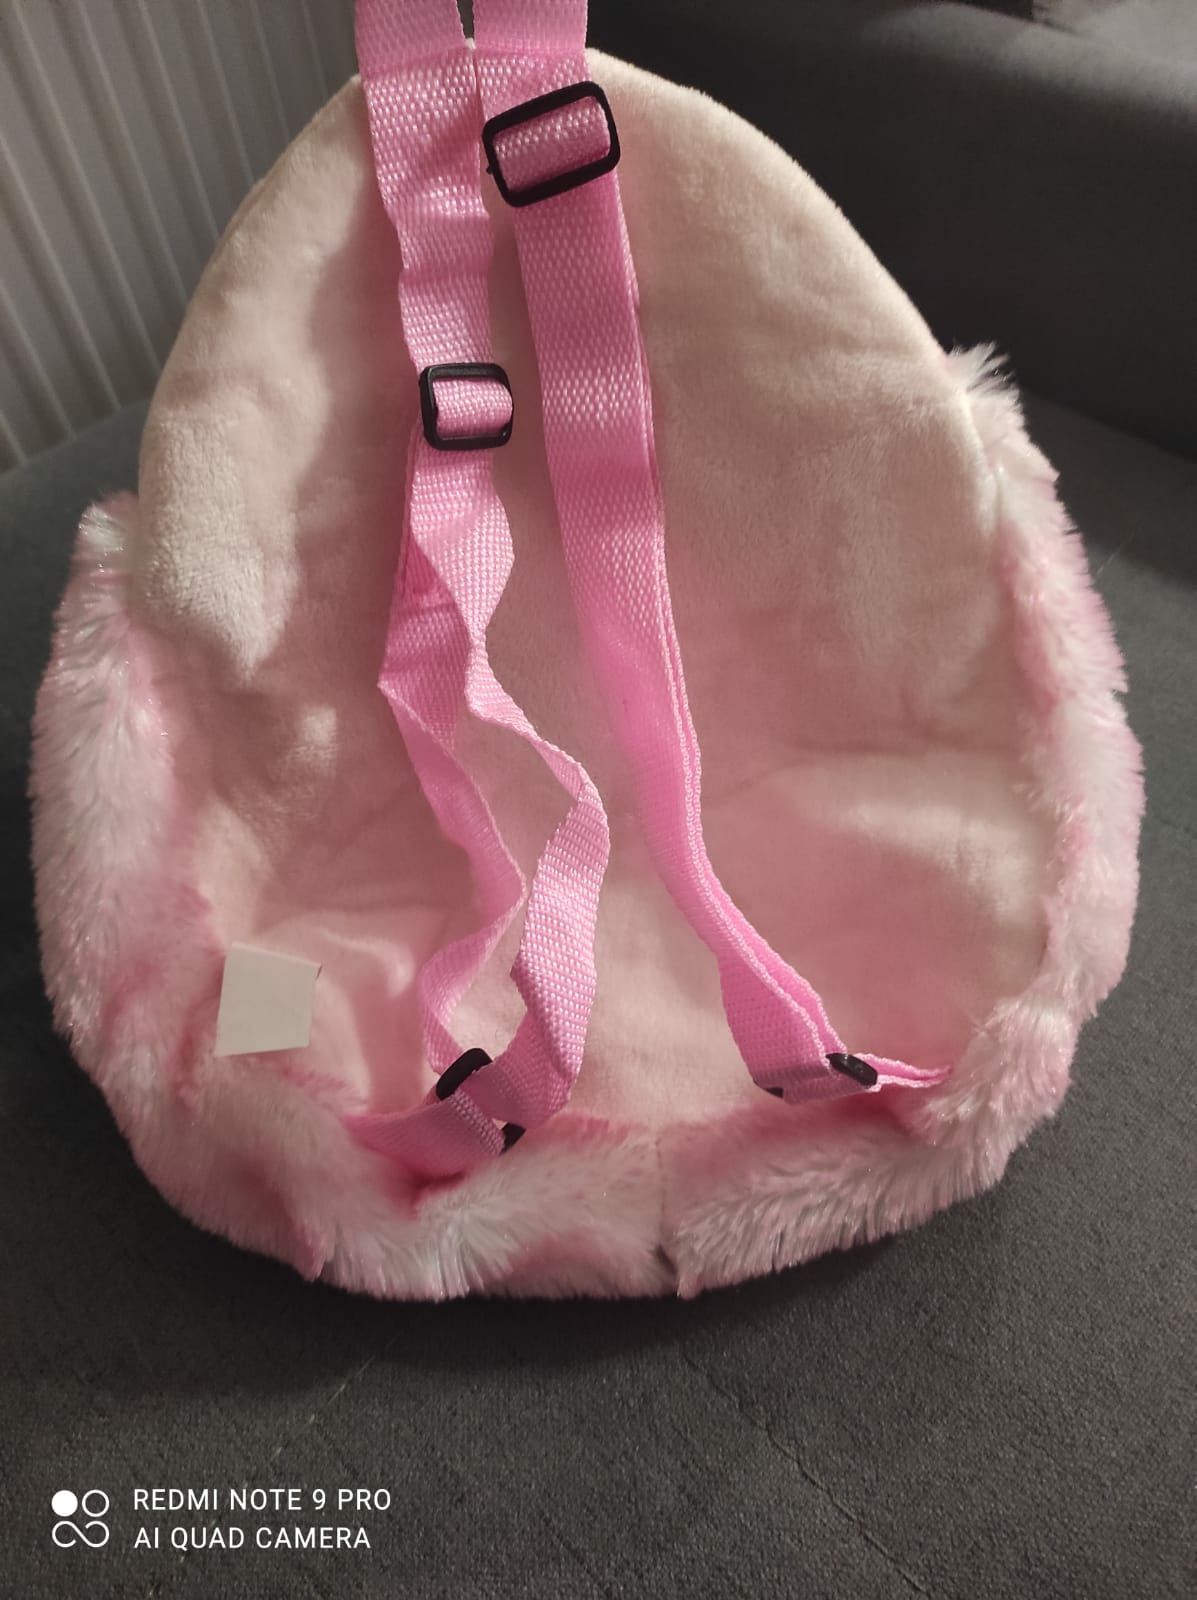 Plecak dla dziewczynki różowy